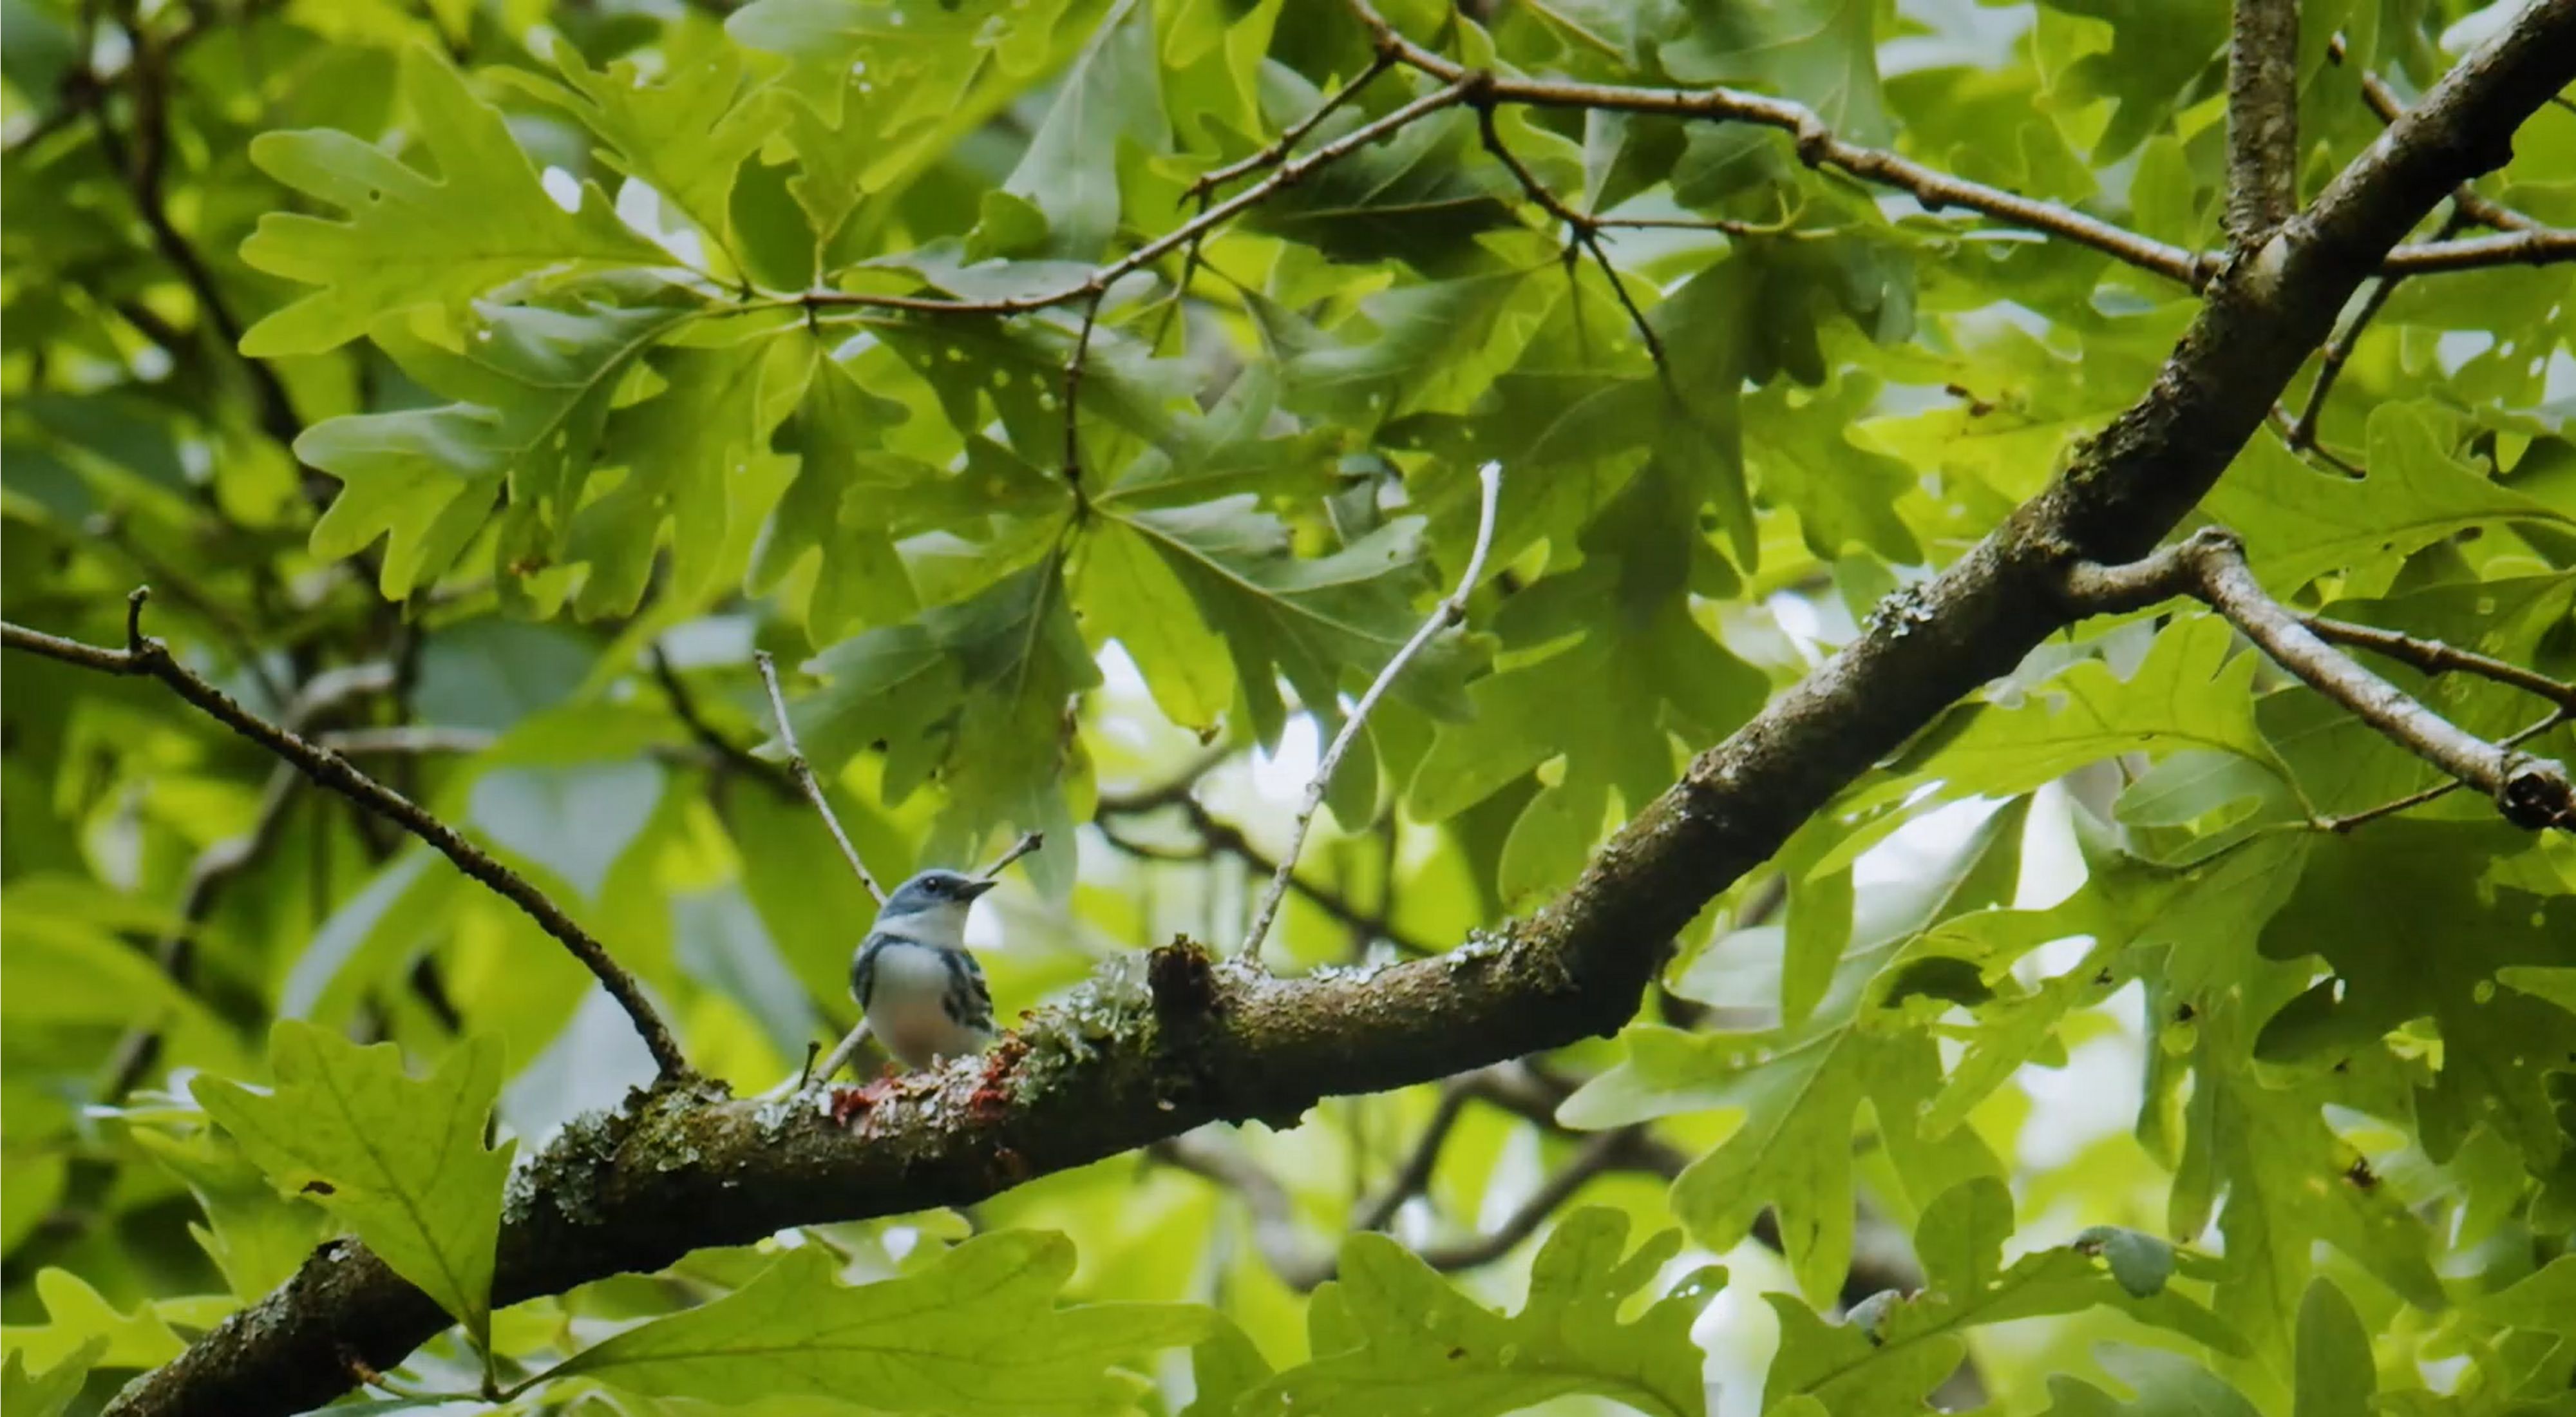 A cerulean warbler perched in an oak tree.